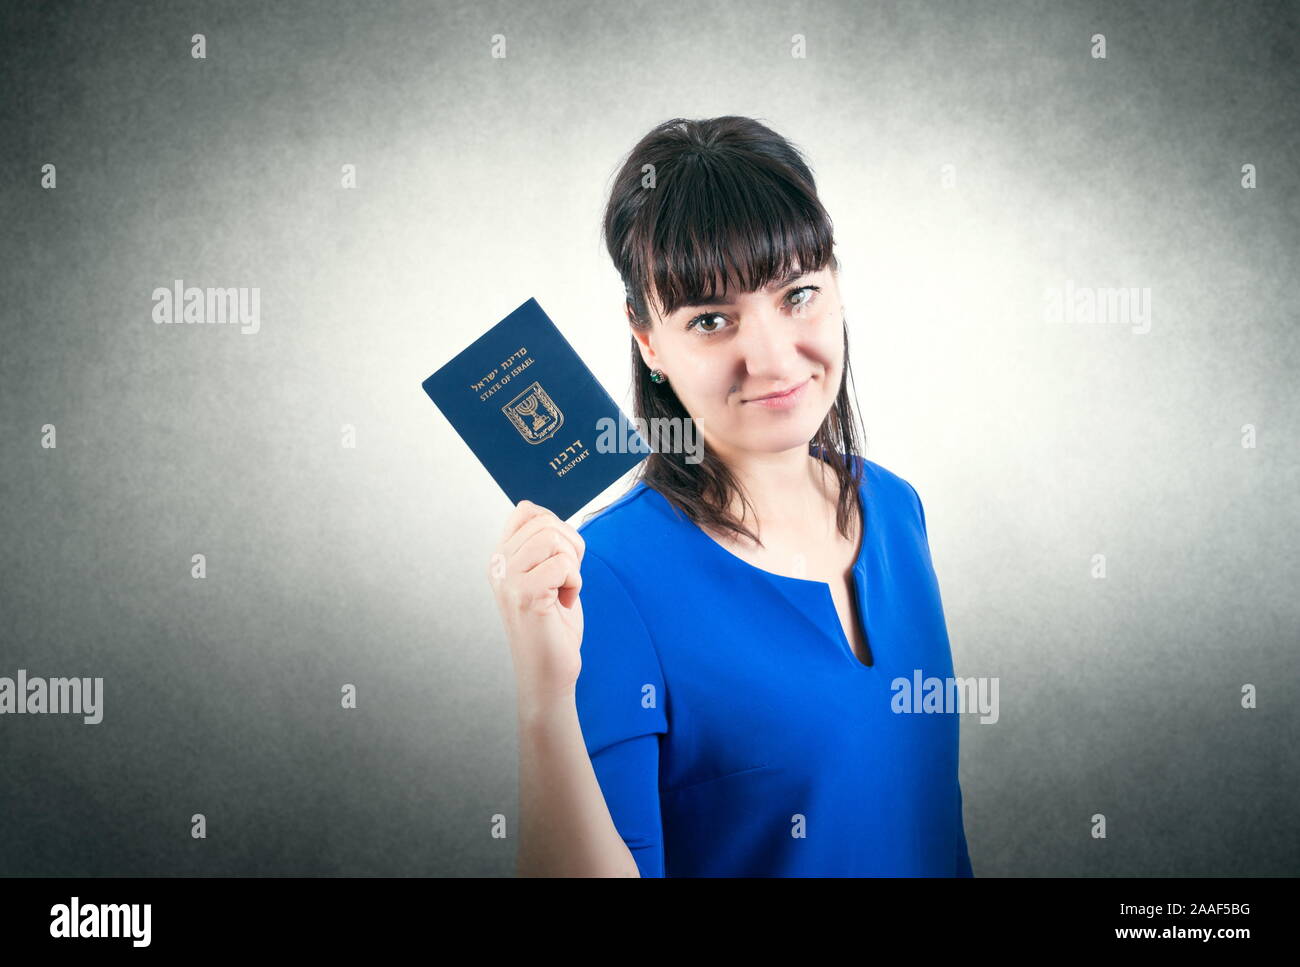 Israel pasaporte en la mano de mujer Foto de stock